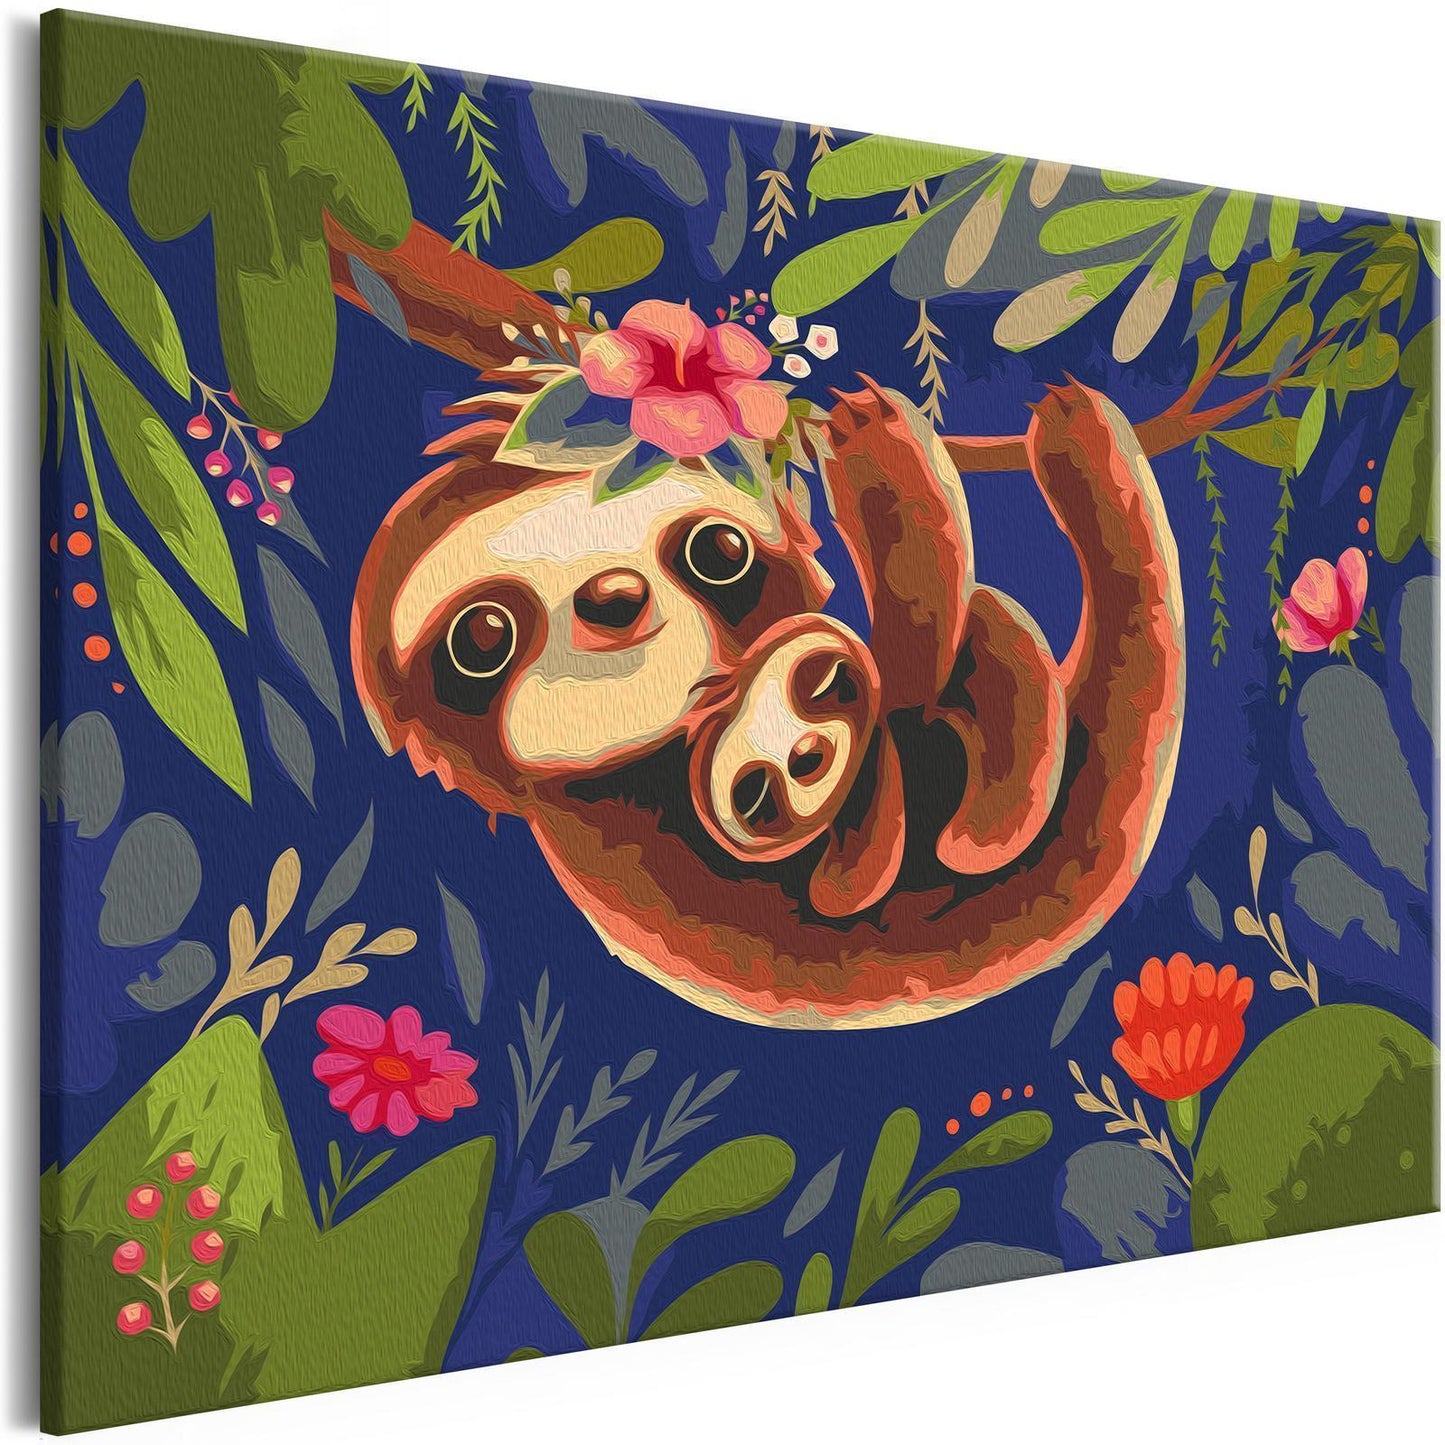 Doe-het-zelf op canvas schilderen - Friendly Sloths